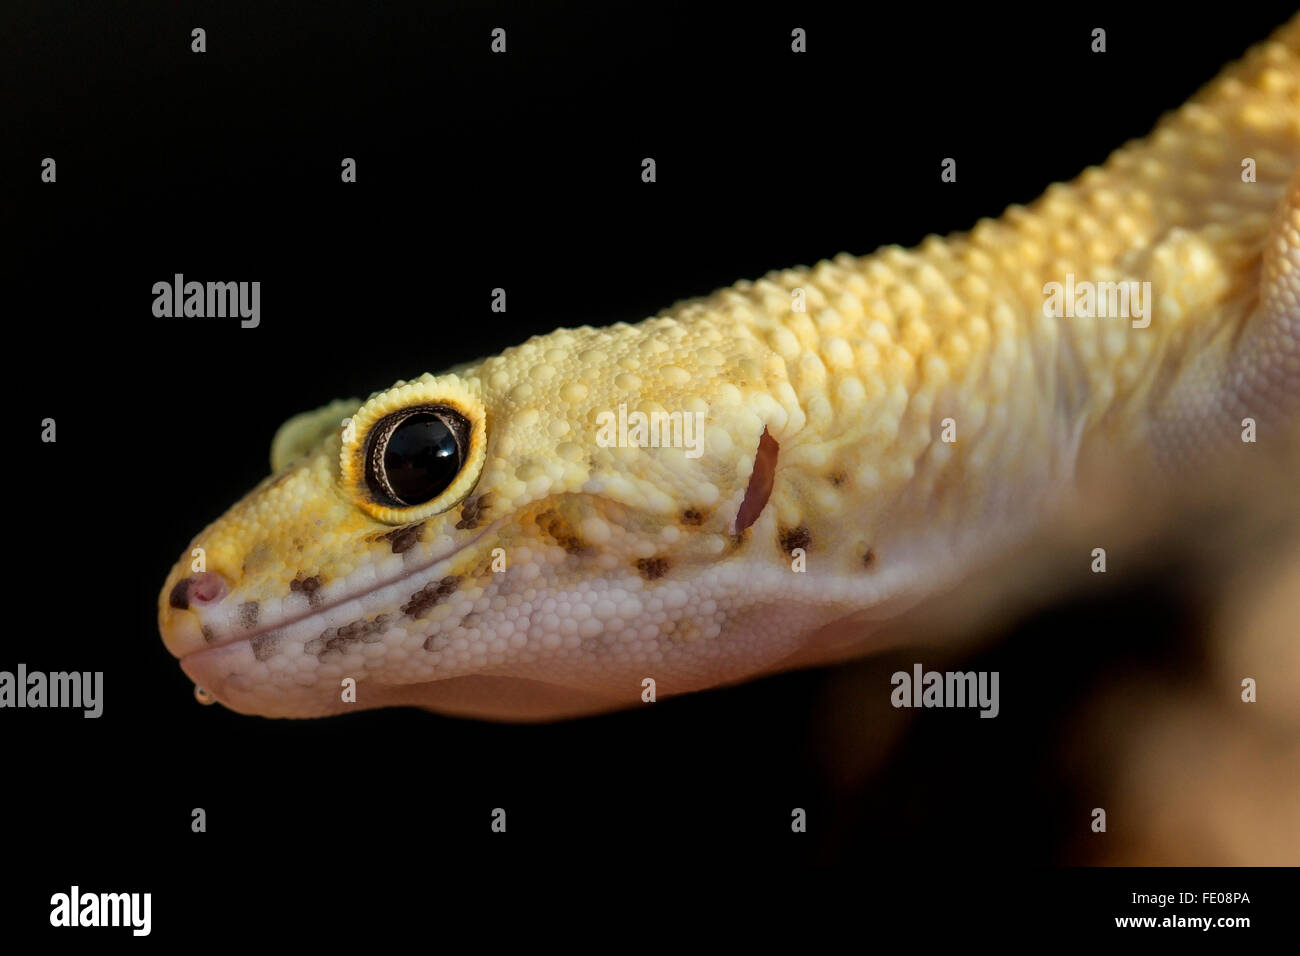 Gros plan de la tête d'un gecko léopard, Eublepharis macularius, sur un fond noir Banque D'Images